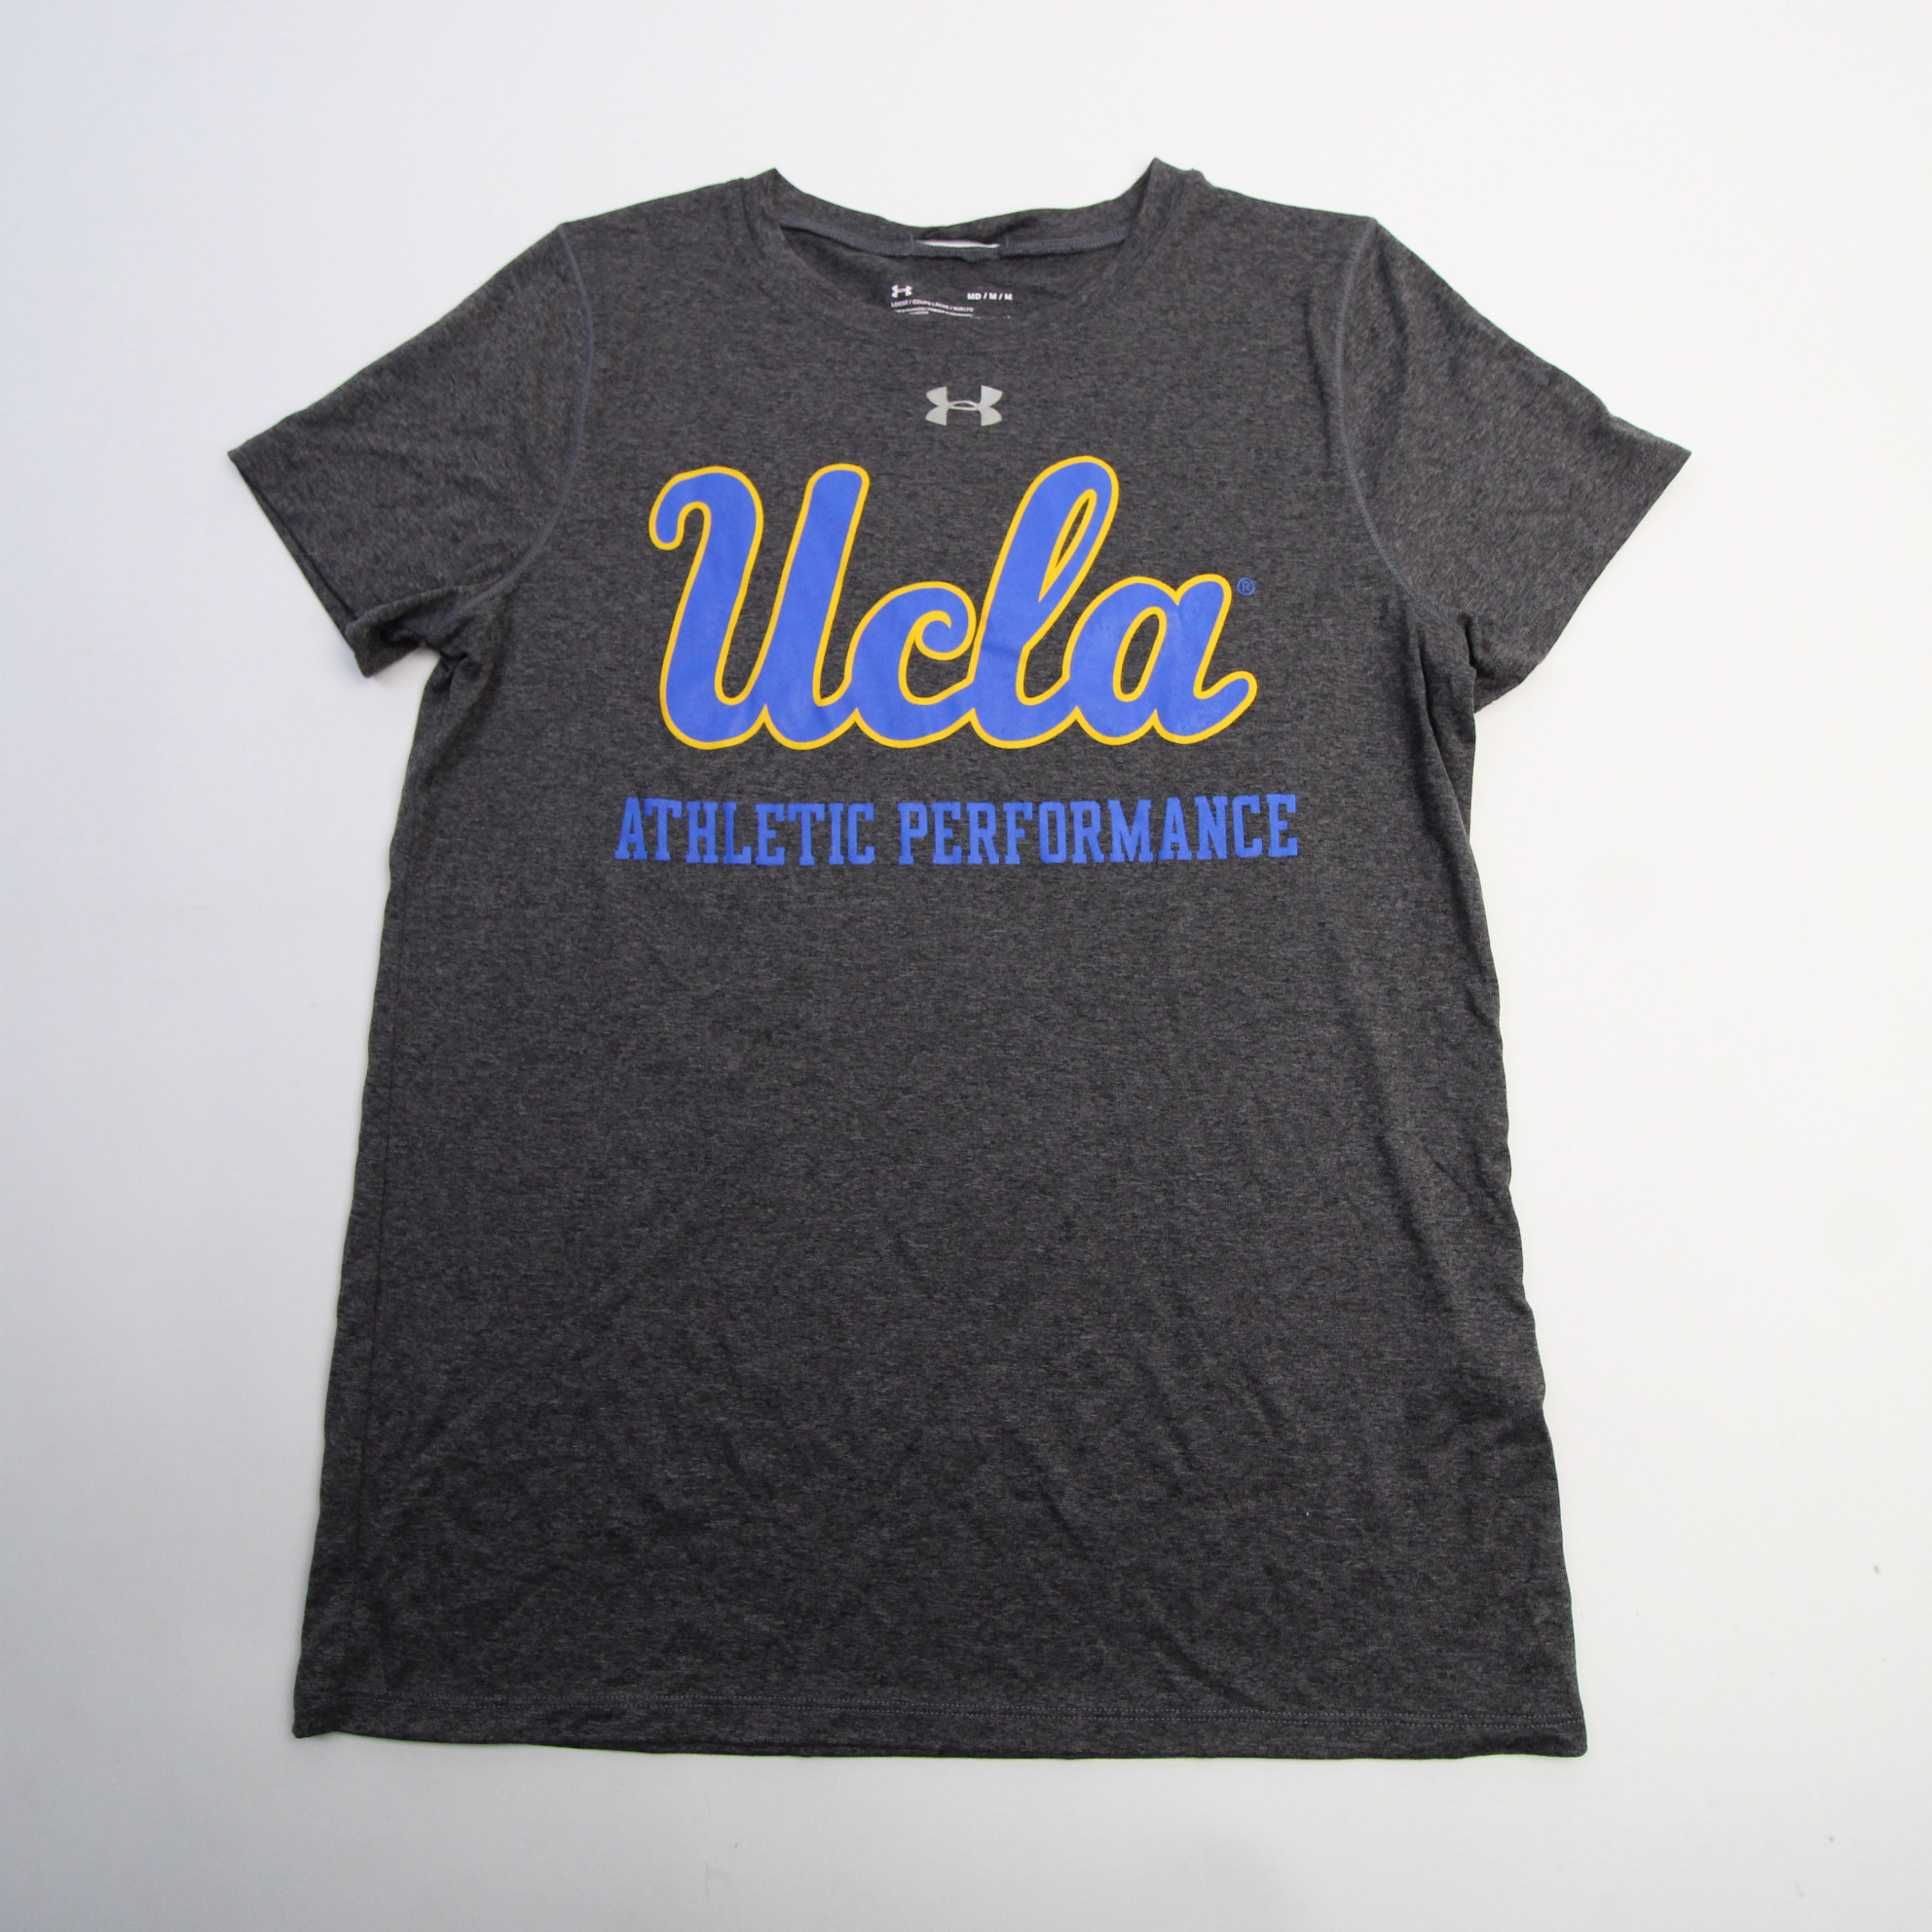 UCLA Bruins Under Armour HeatGear Short Sleeve Shirt Men's White New S